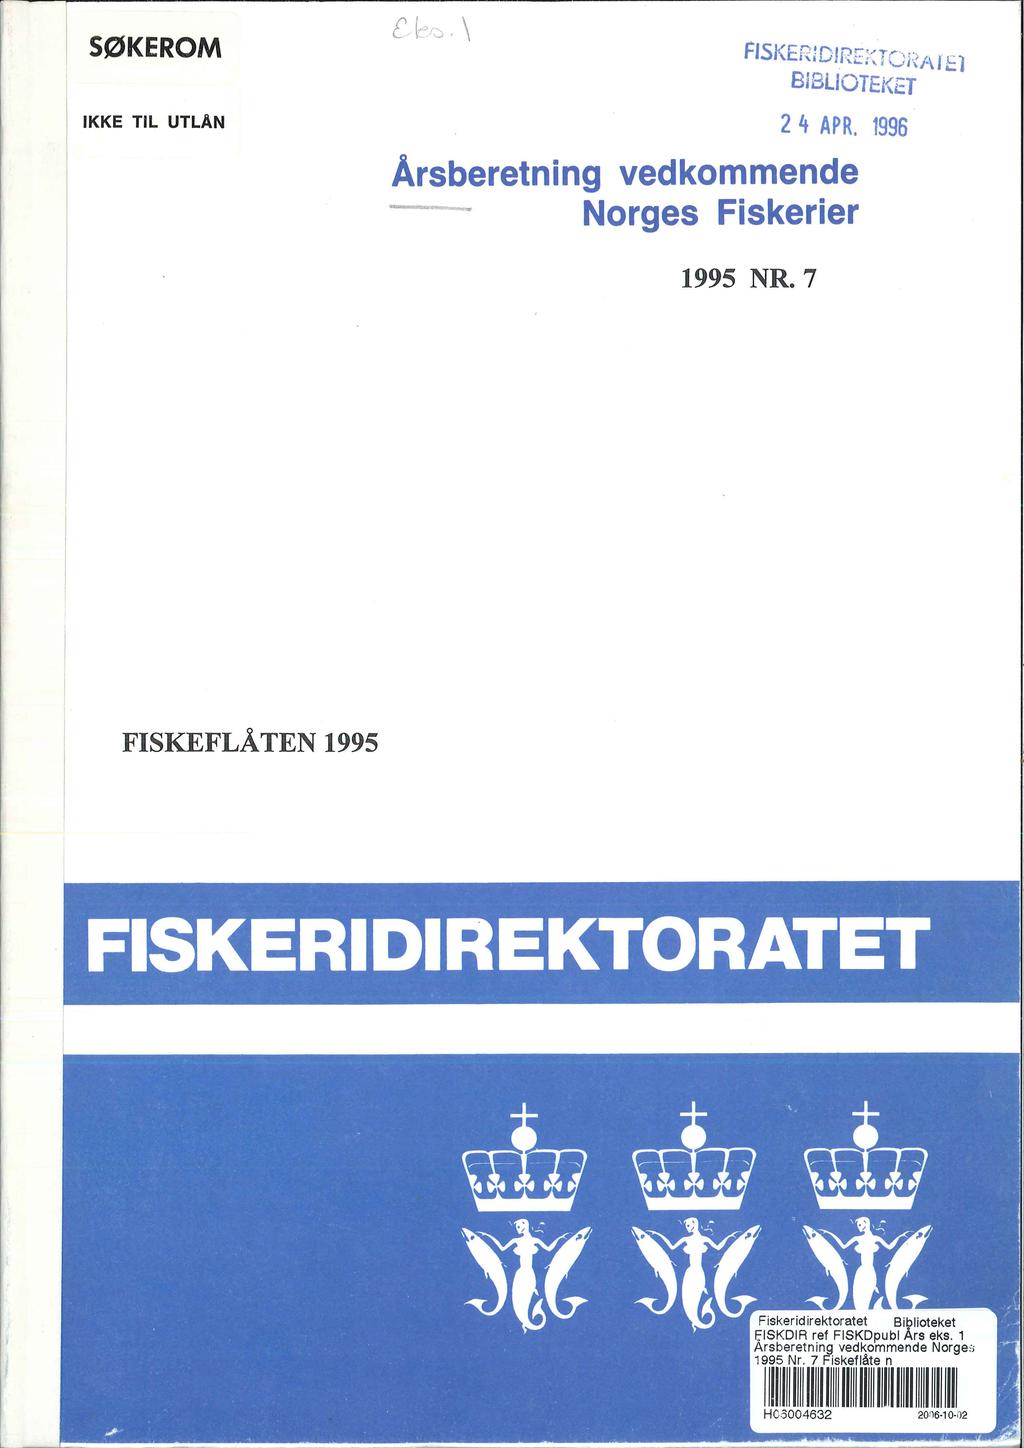 SØKE ROM IKKE TIL UTLAN Flsl< l= D! rt.l r"~r ~"' ~,...._..._,,i ~ 1 ' ''-i::::',' \_i i ~ l-\ le l BIBLIOTEKET 2 4 APR. 1996 Årsberetning vedkommende Norges Fiskerier 1995 NR.